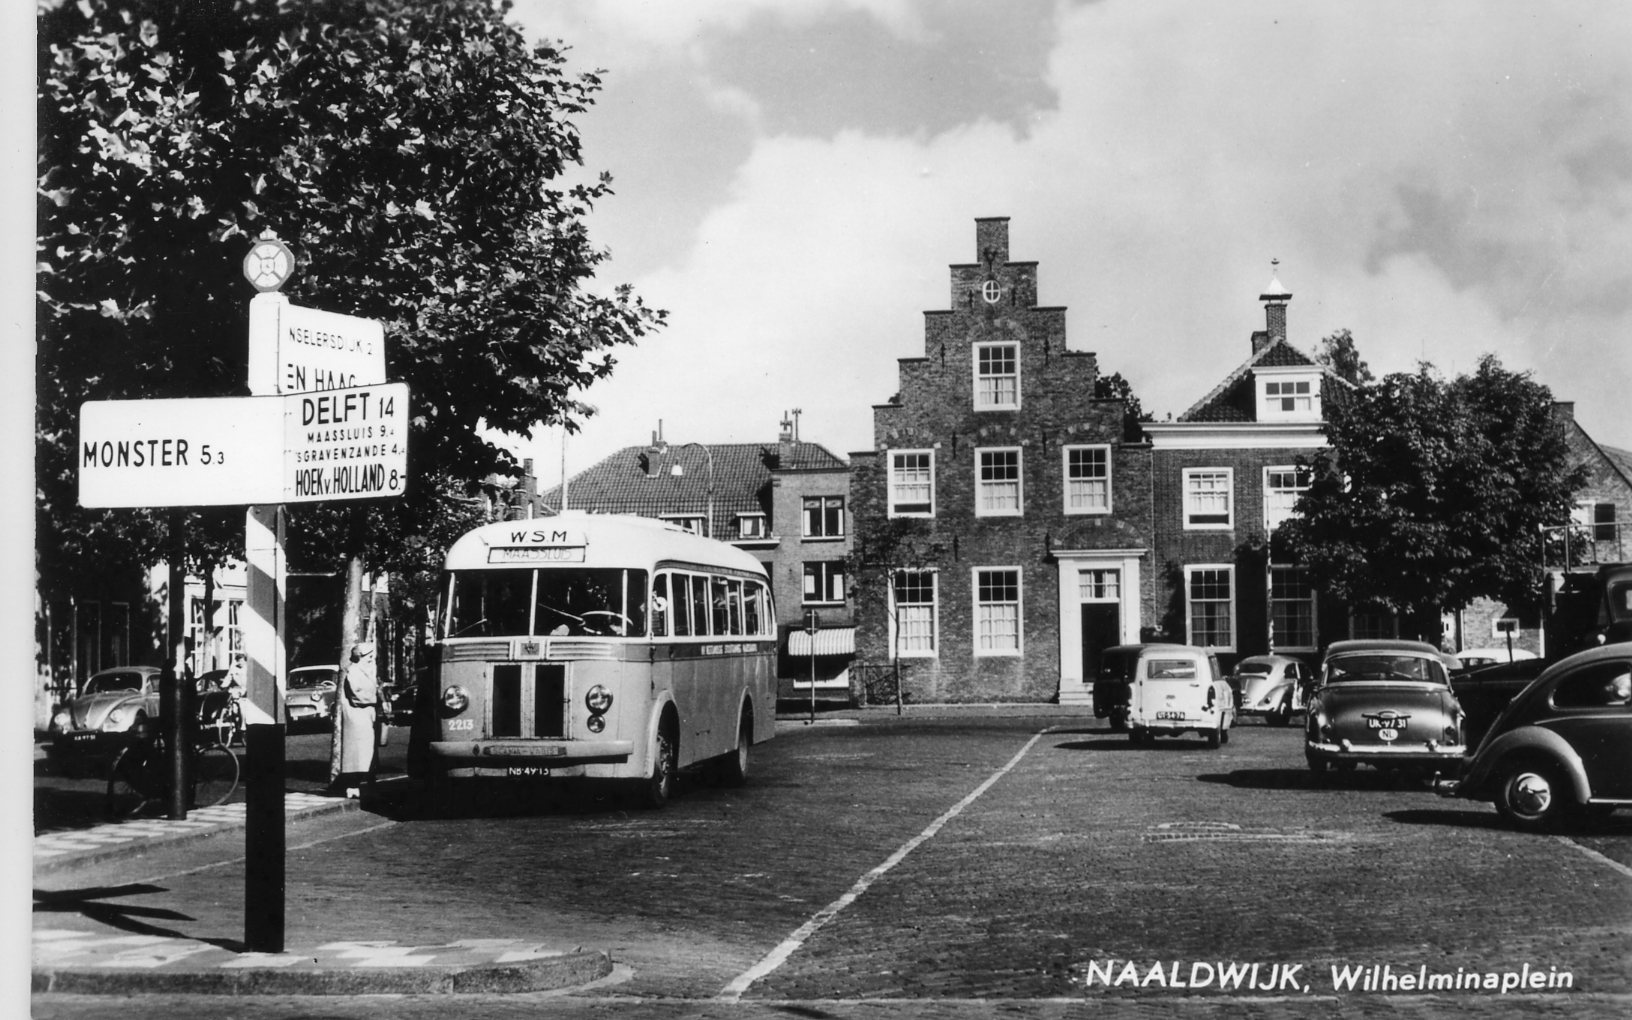 De bus in het centrum van het dorp: een Scania-Vabis van de WSM in Naaldwijk'; circa 1960 (ansichtkaart)